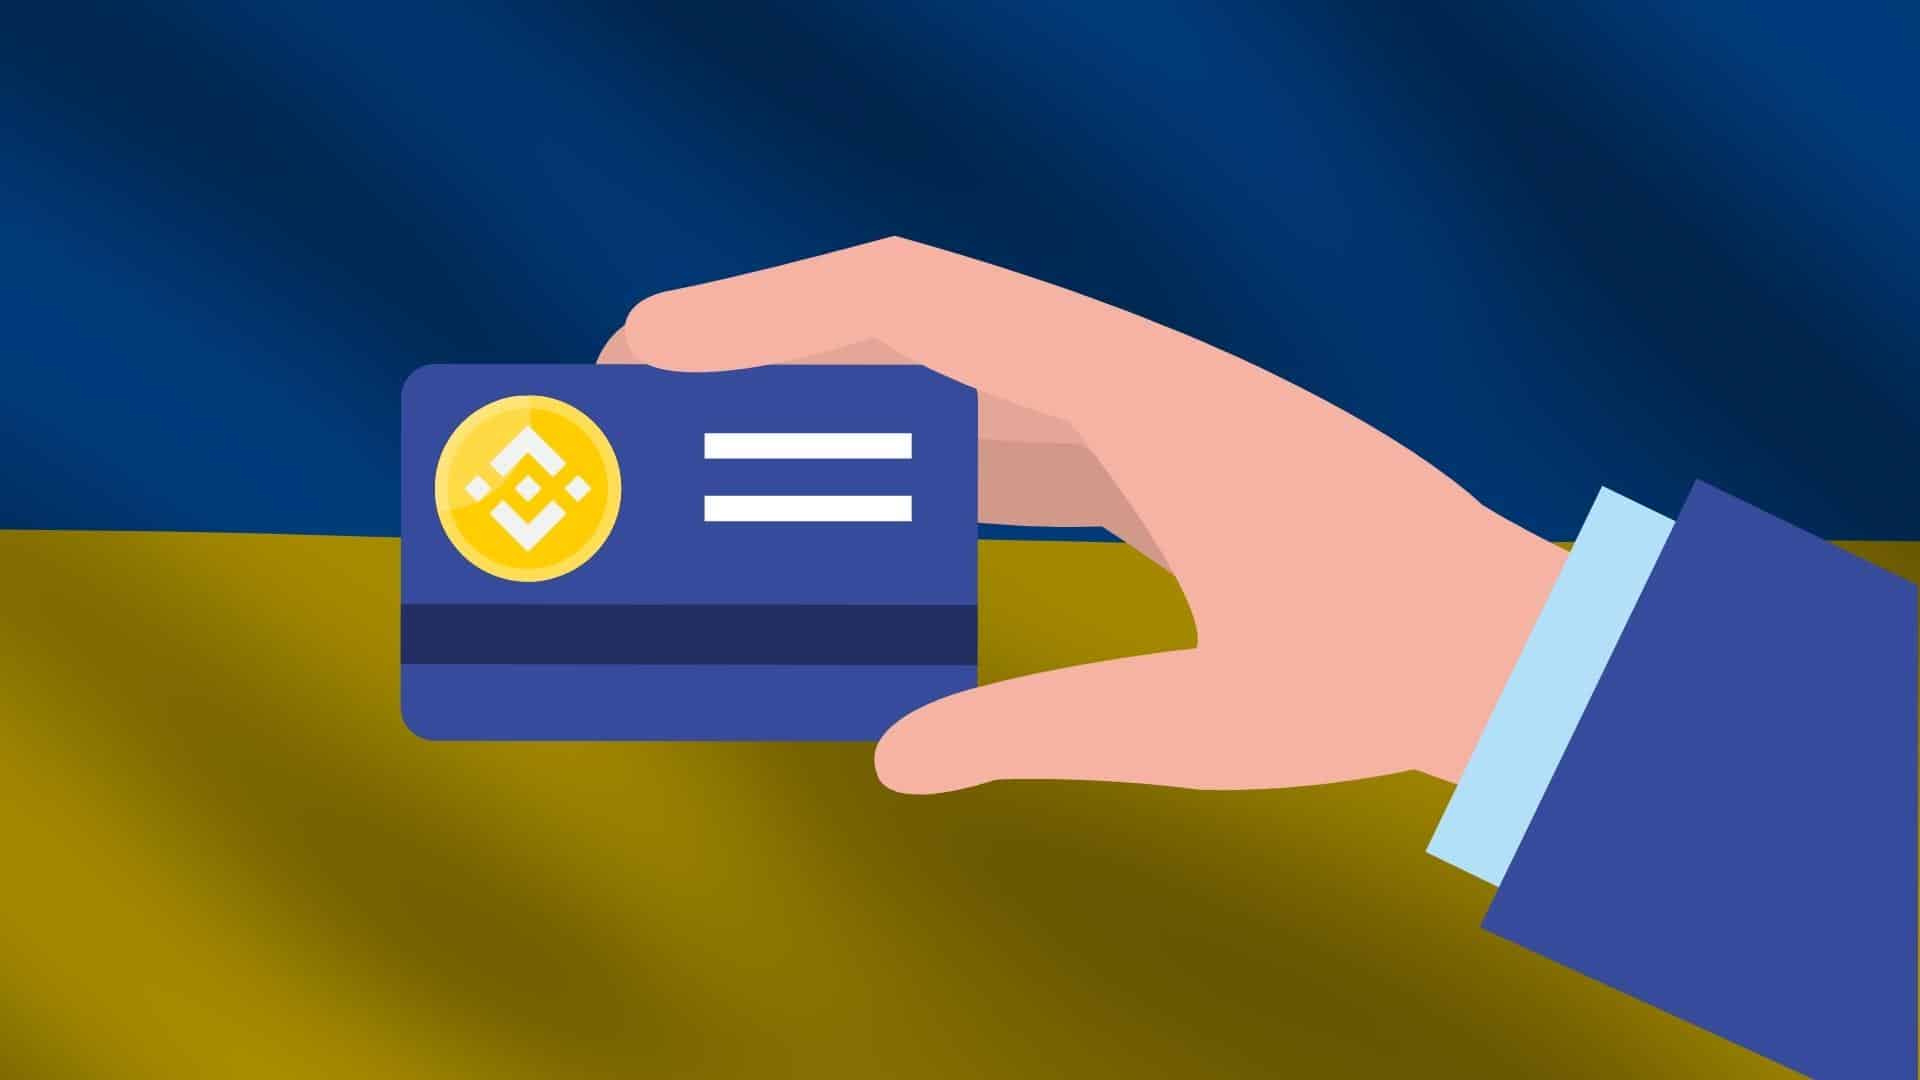 Binance запустили крипто-карты для украинских беженцев с выплатами 225 BUSD. Заглавный коллаж новости.